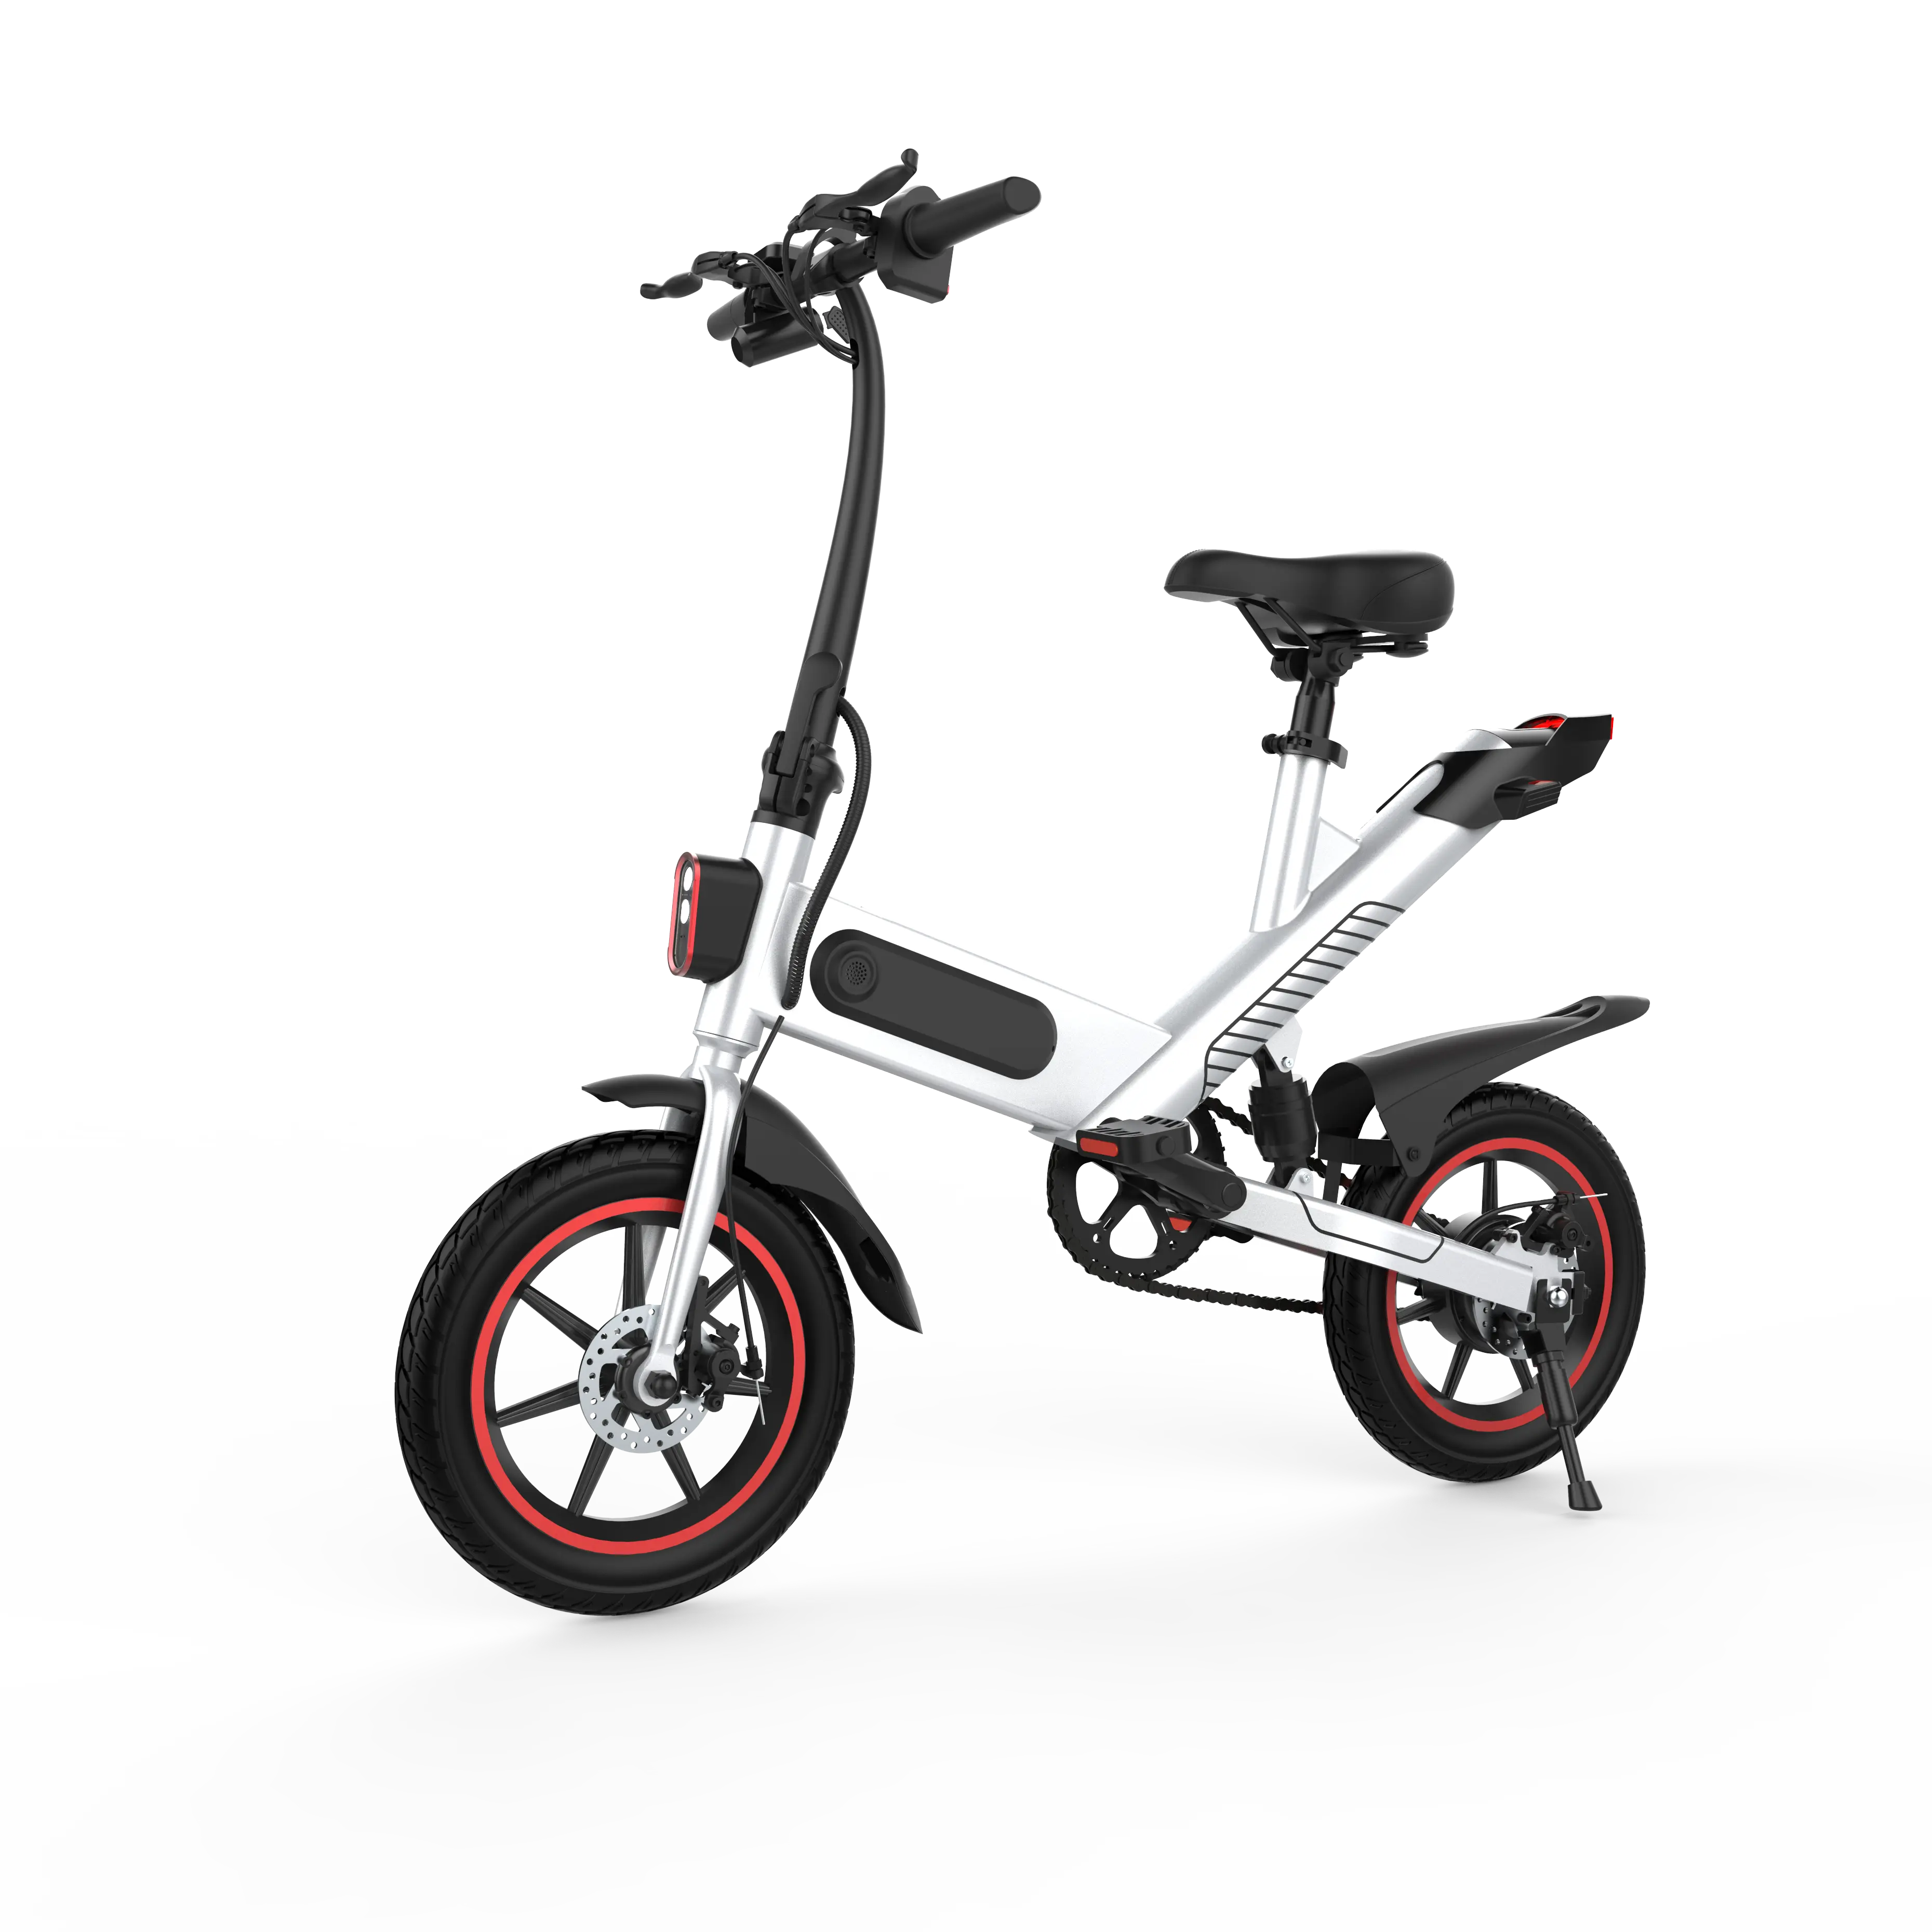 X-Tron Высокое качество 25 км/ч складной электрический велосипед Скутер 14 дюймов мини электрический городской велосипед из Китая